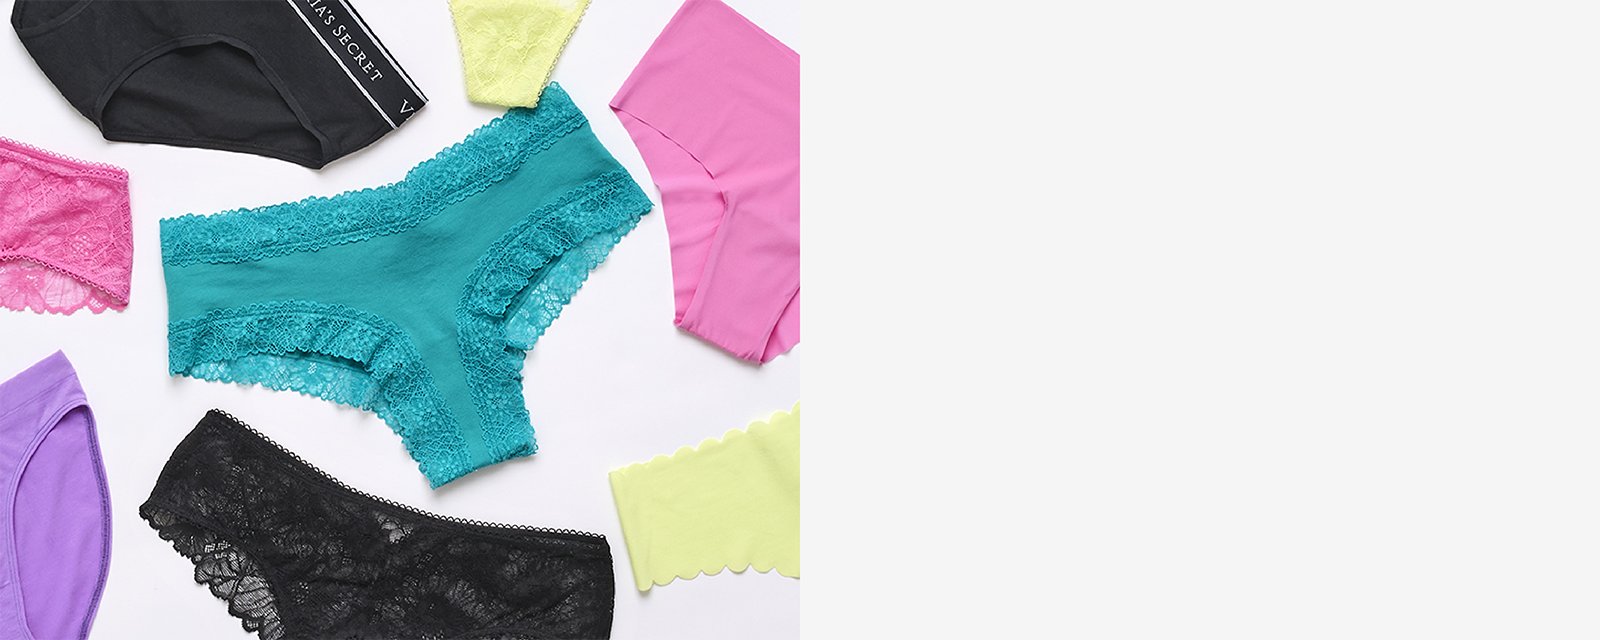 victoriassecret.com - Pack of 5 women's panties